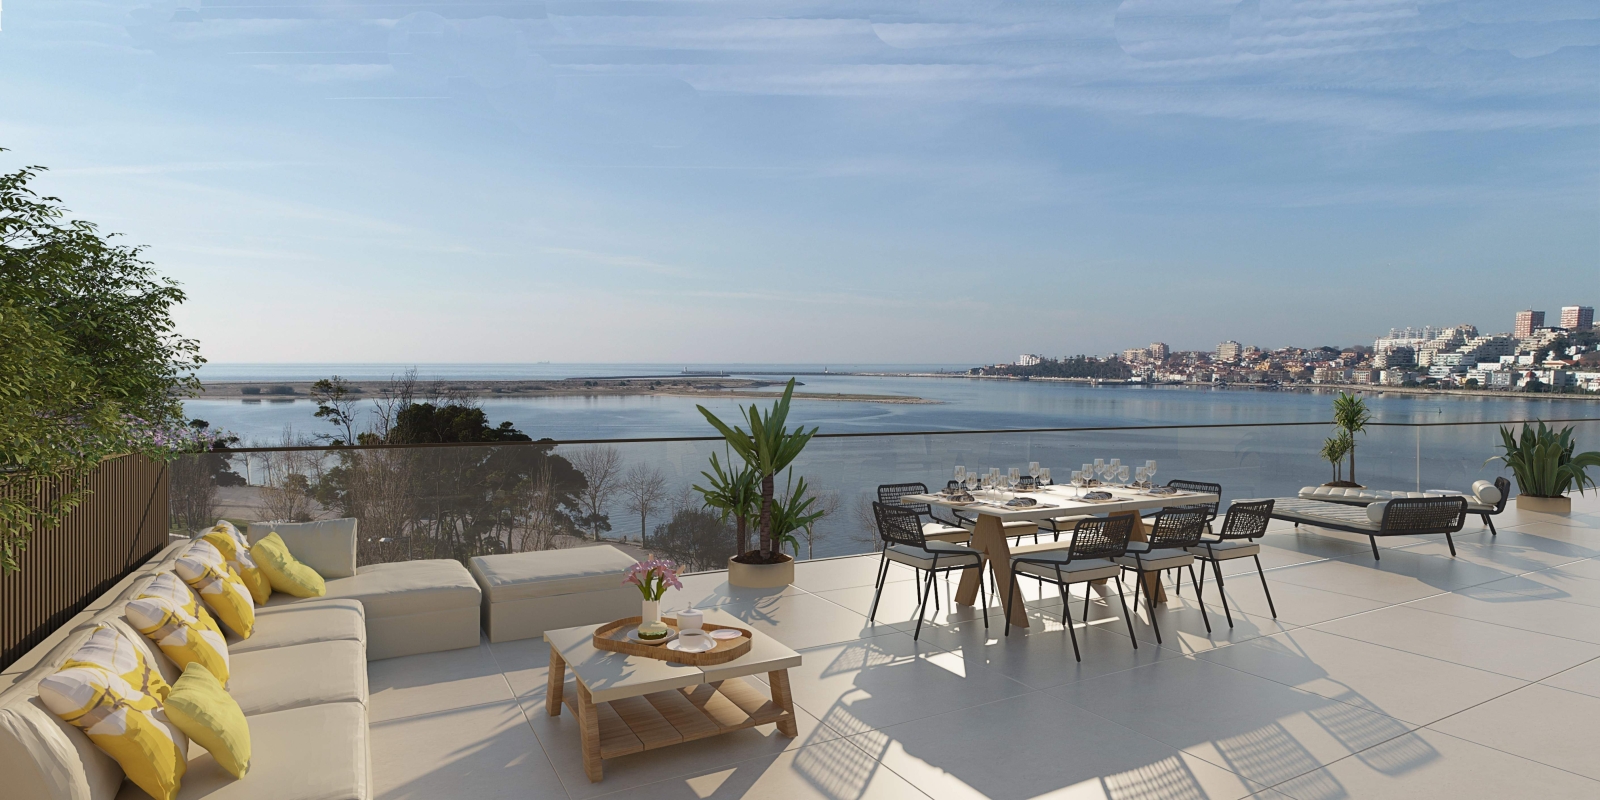 Piso en venta con terraza, en exclusivo condominio, V. N. Gaia, Porto, Portugal_175971